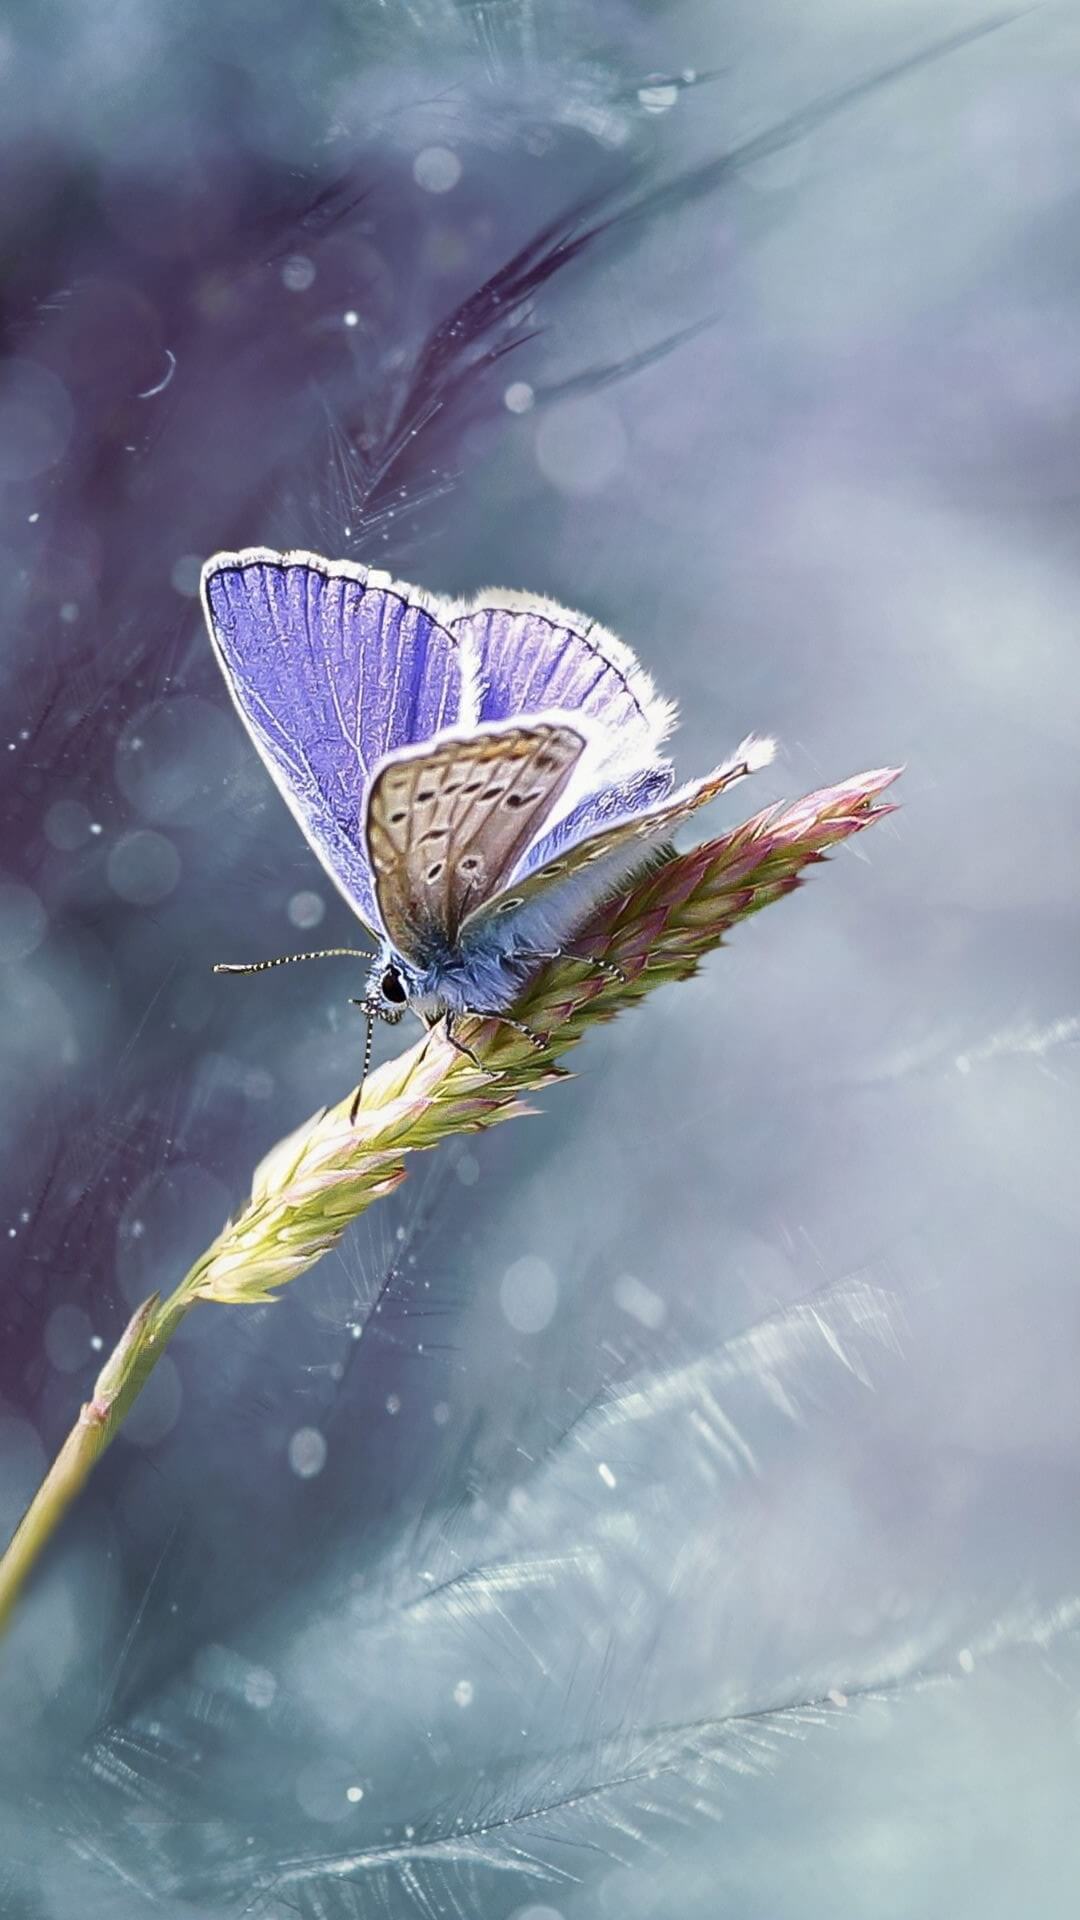 Dies ist ein Foto, das einen lila Schmetterling zeigt, der auf einer Pflanze sitzt.